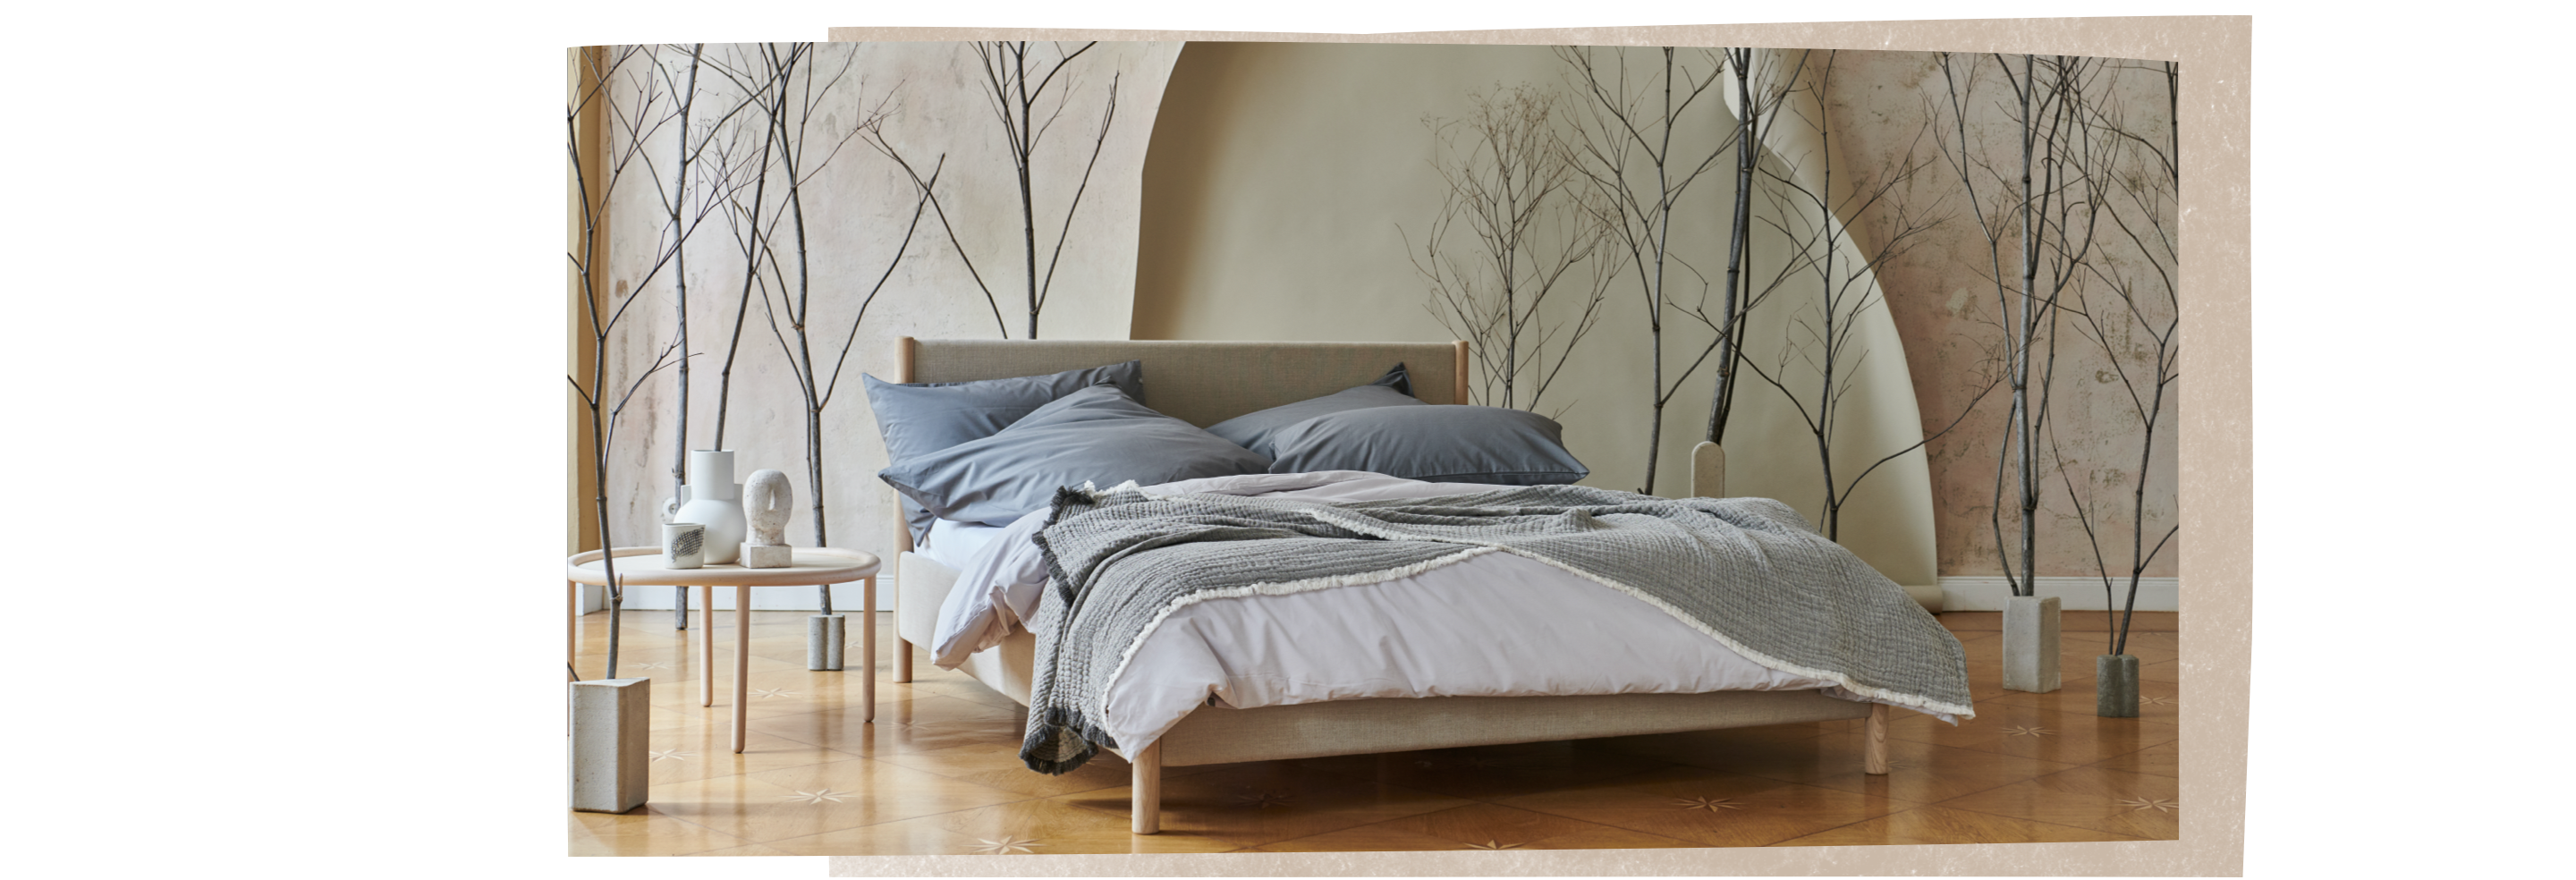 Ein Bett mit Bettwäsche und Decken aus Bio-Baumwolle